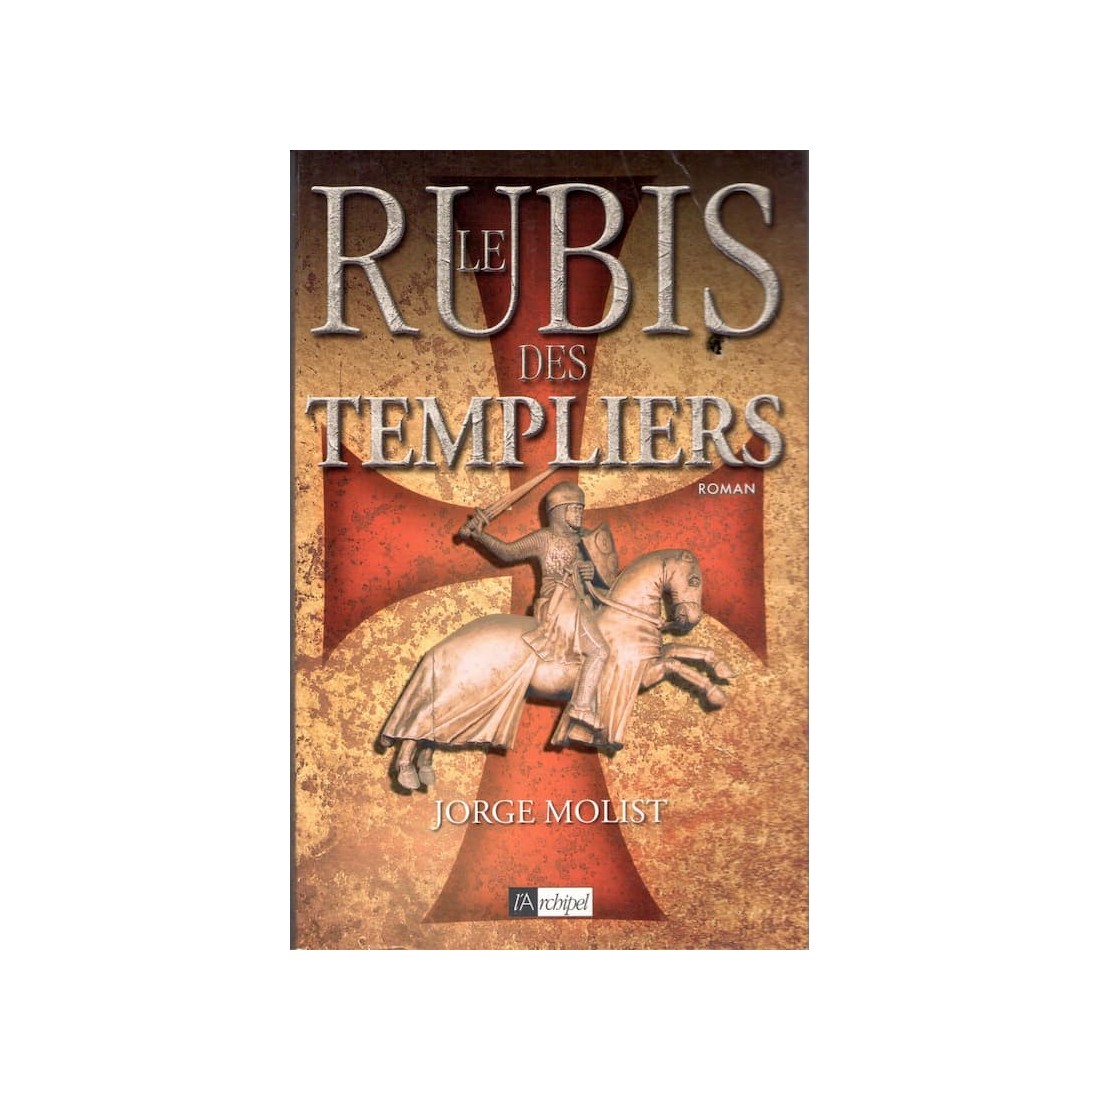 Le rubis des Templiers - Roman de Jorge Molist - Ocazlivres.com